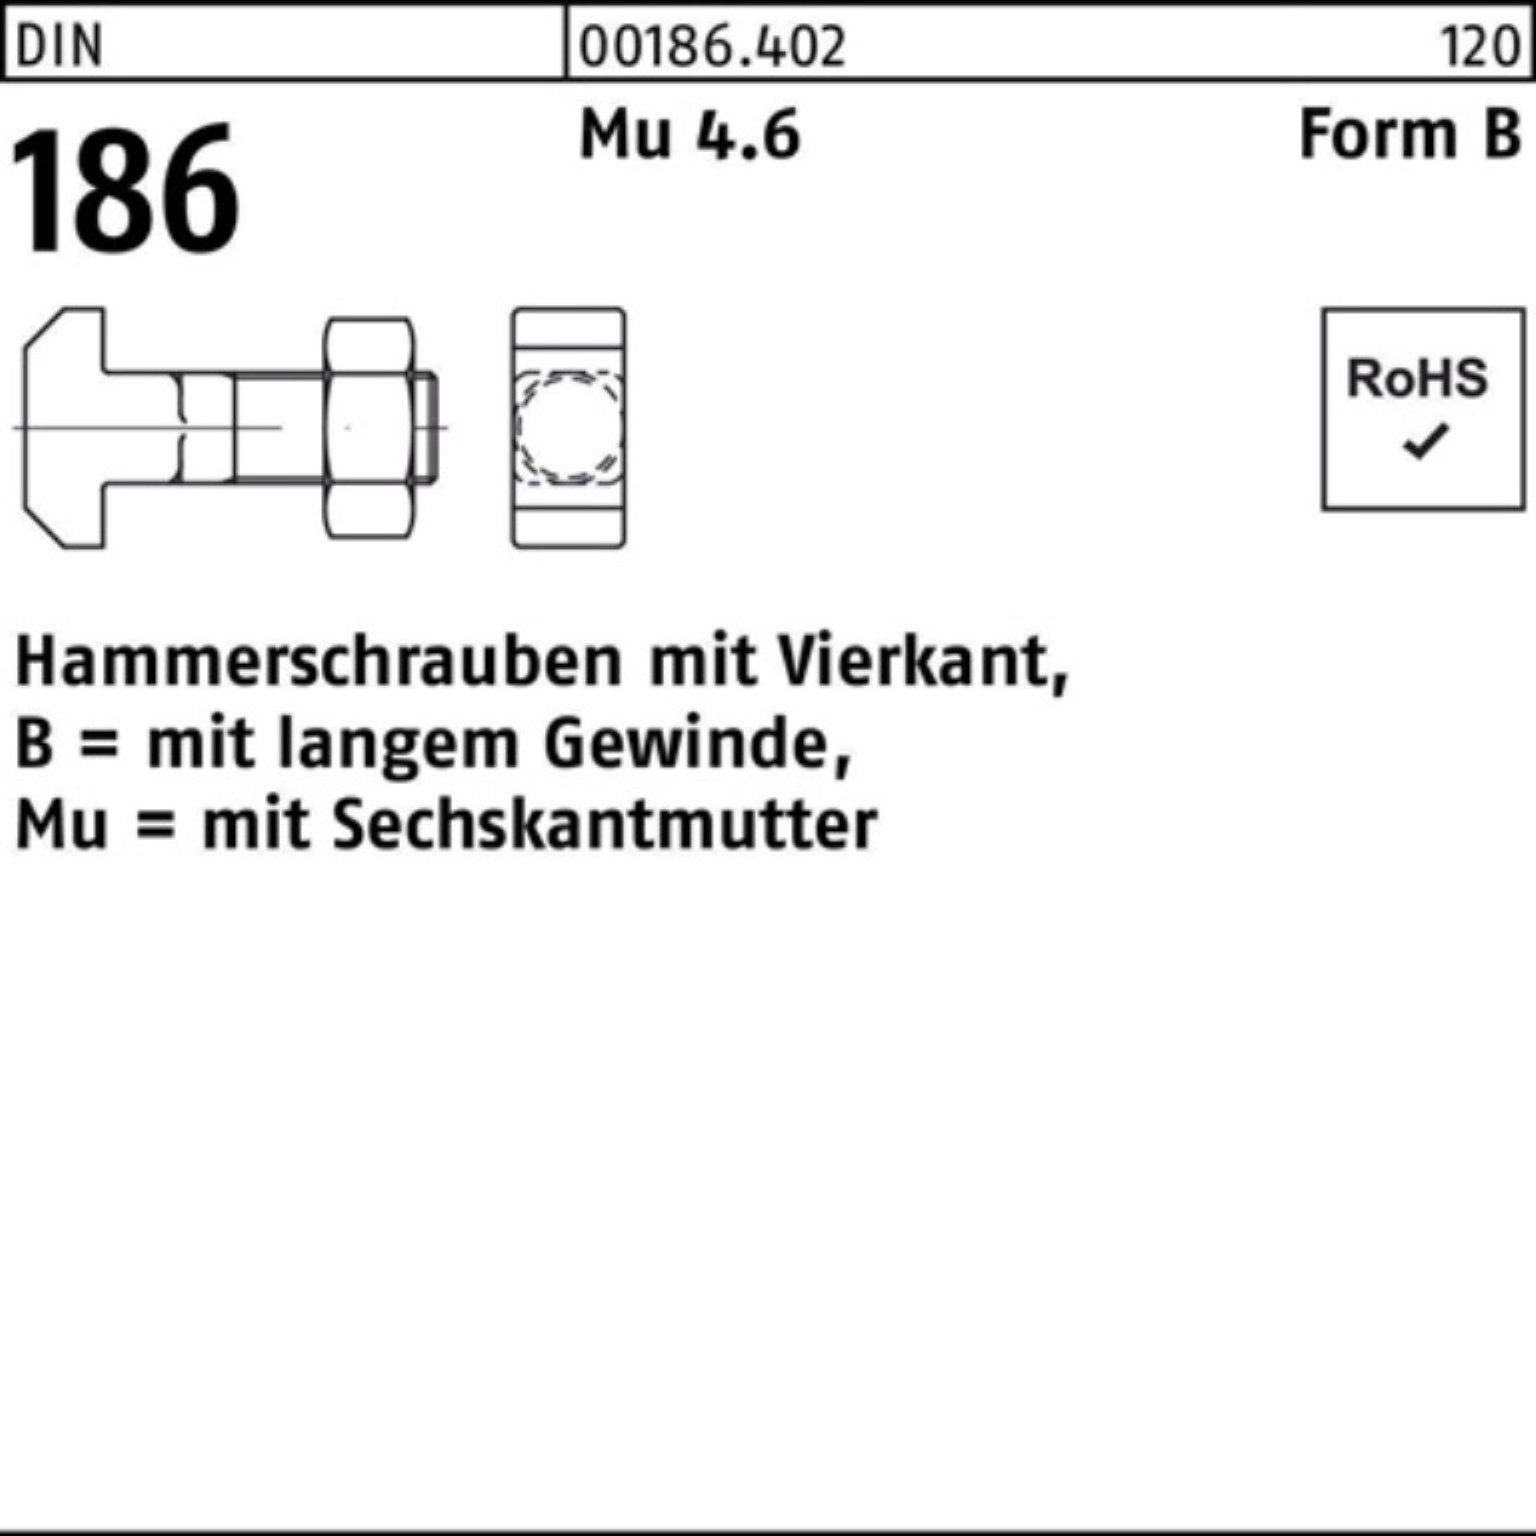 Reyher Schraube 100er Pack Hammerschraube DIN 186 FormB Vierkant 6-ktmutter BM 20x 100